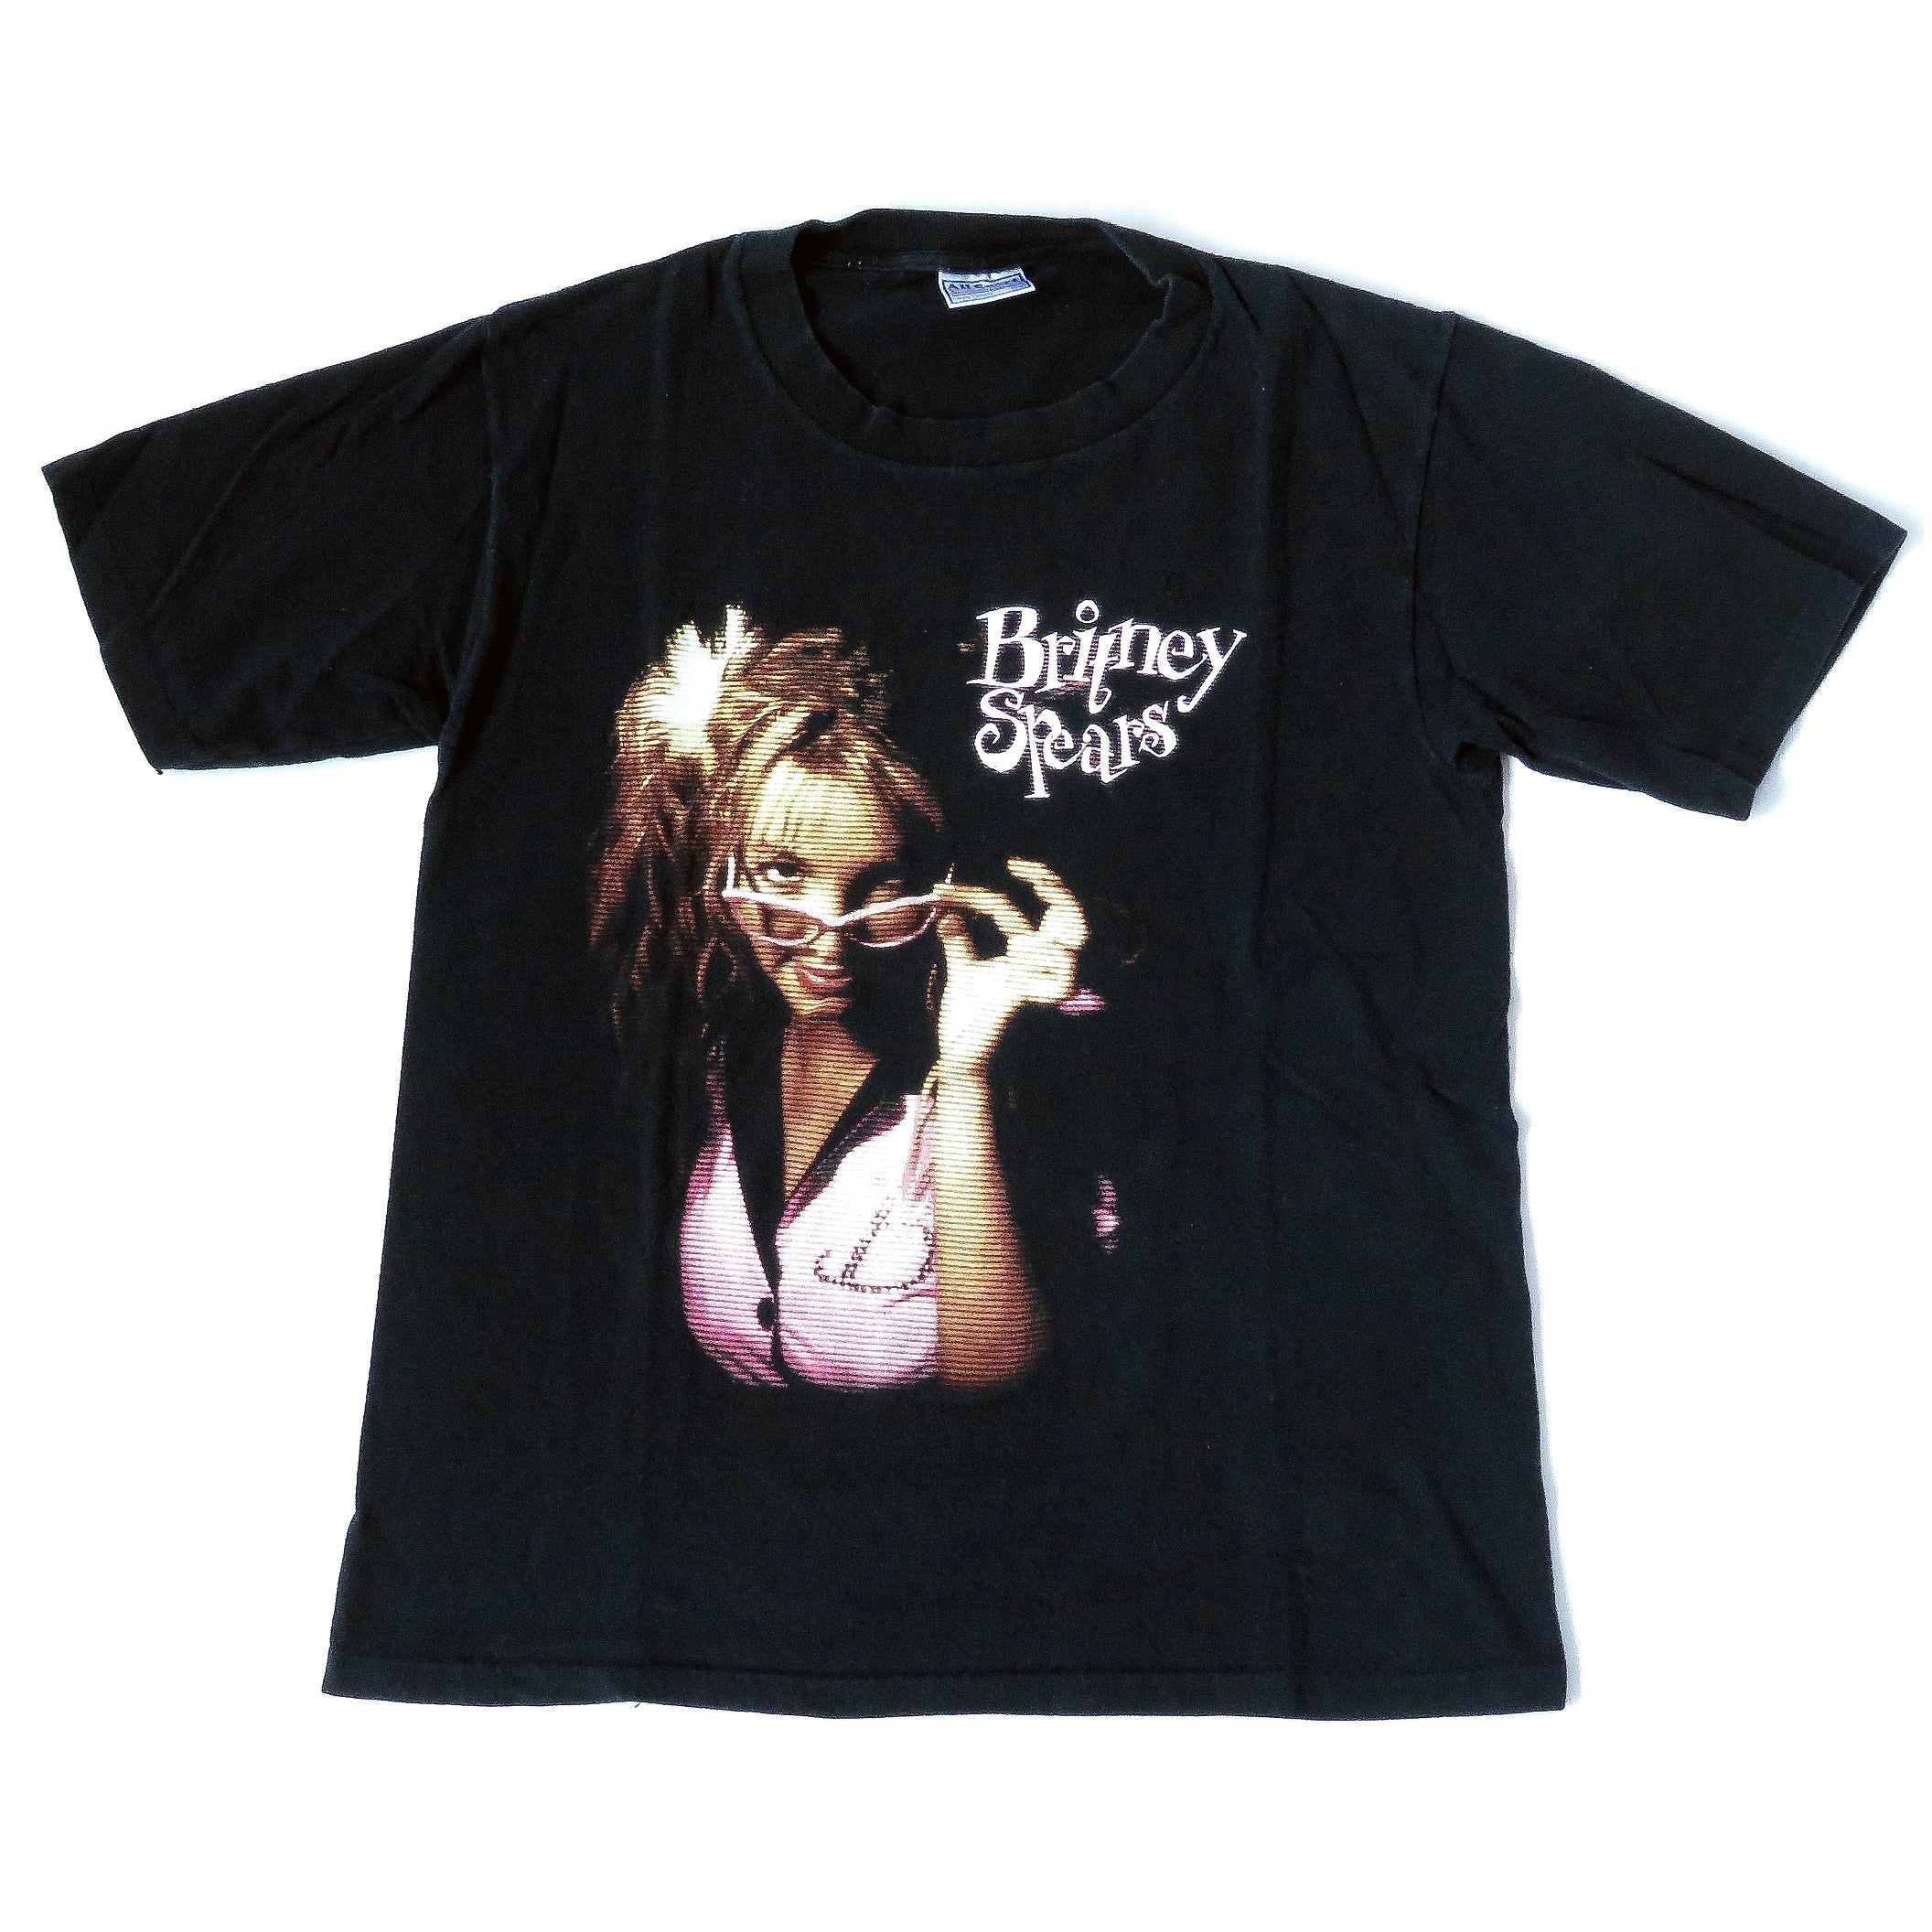 Vintage Britney Spears Tour T-Shirt Sz S